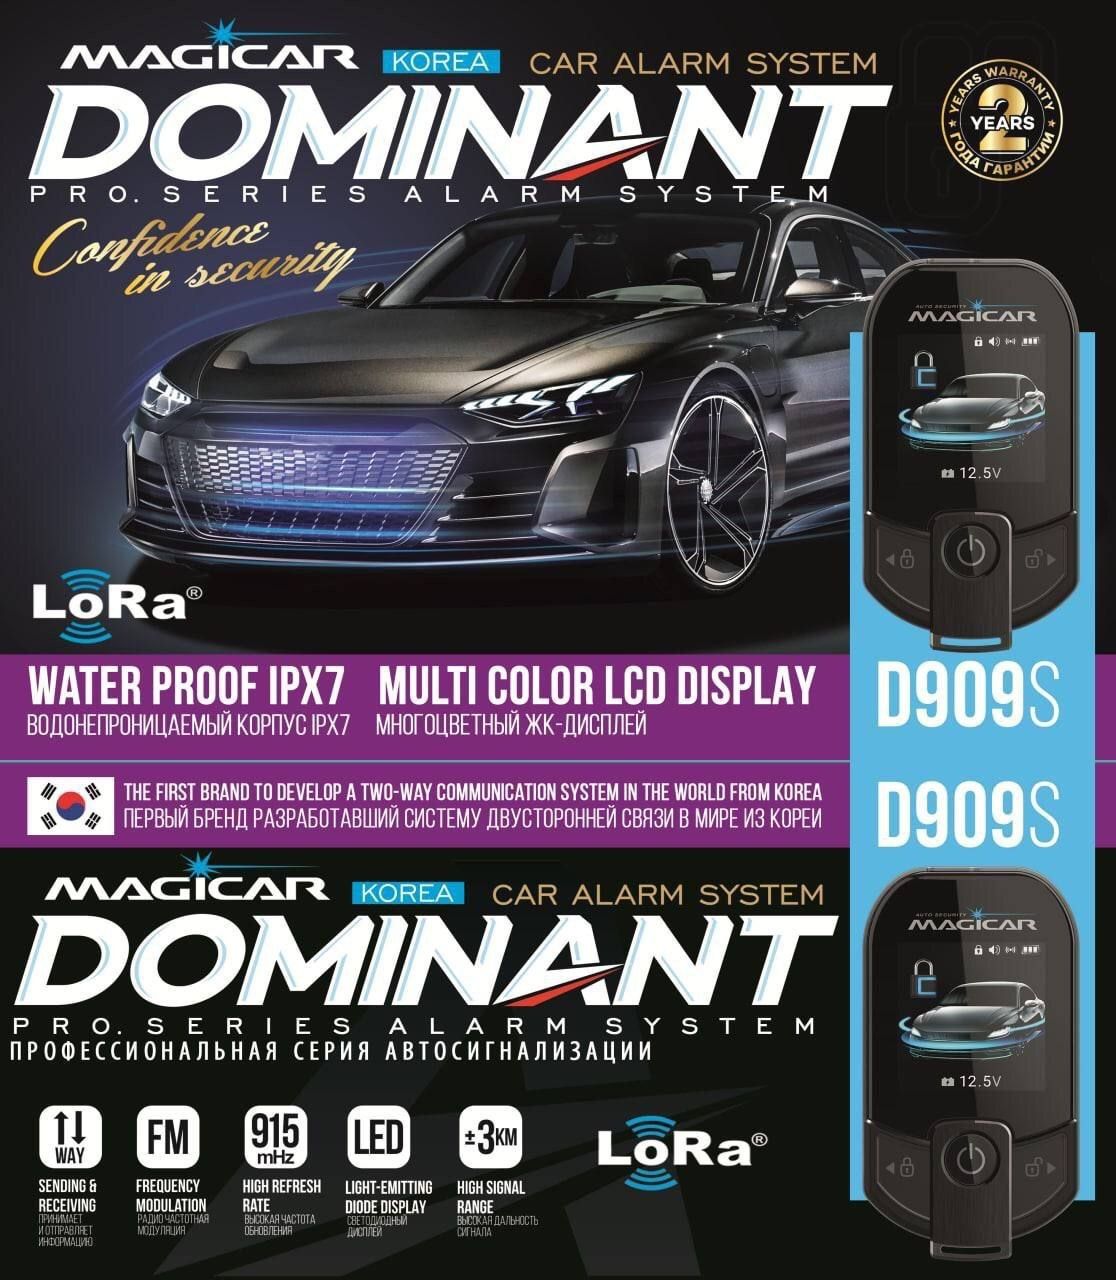 Magicar Dominant D909S